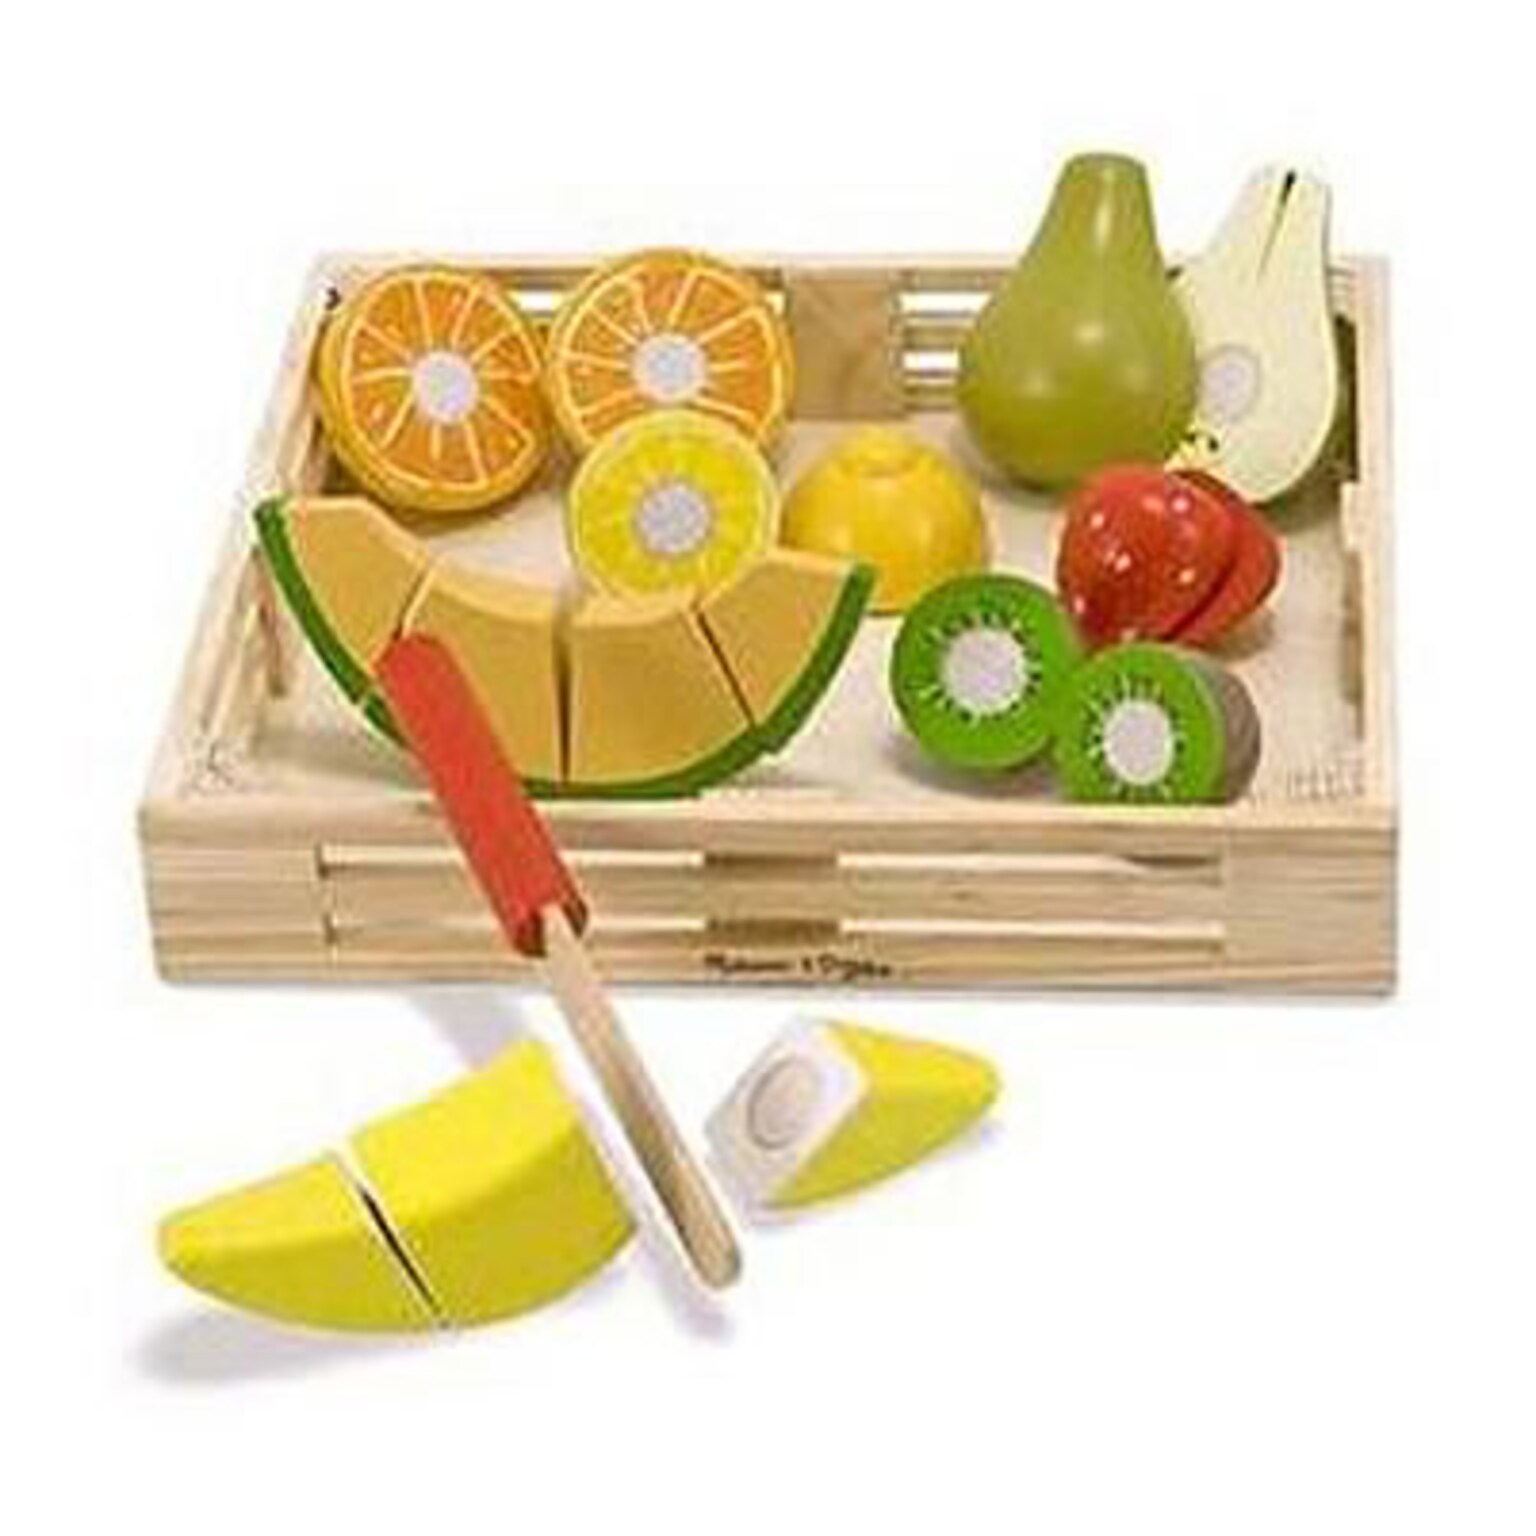 Cutting Fruit Crate